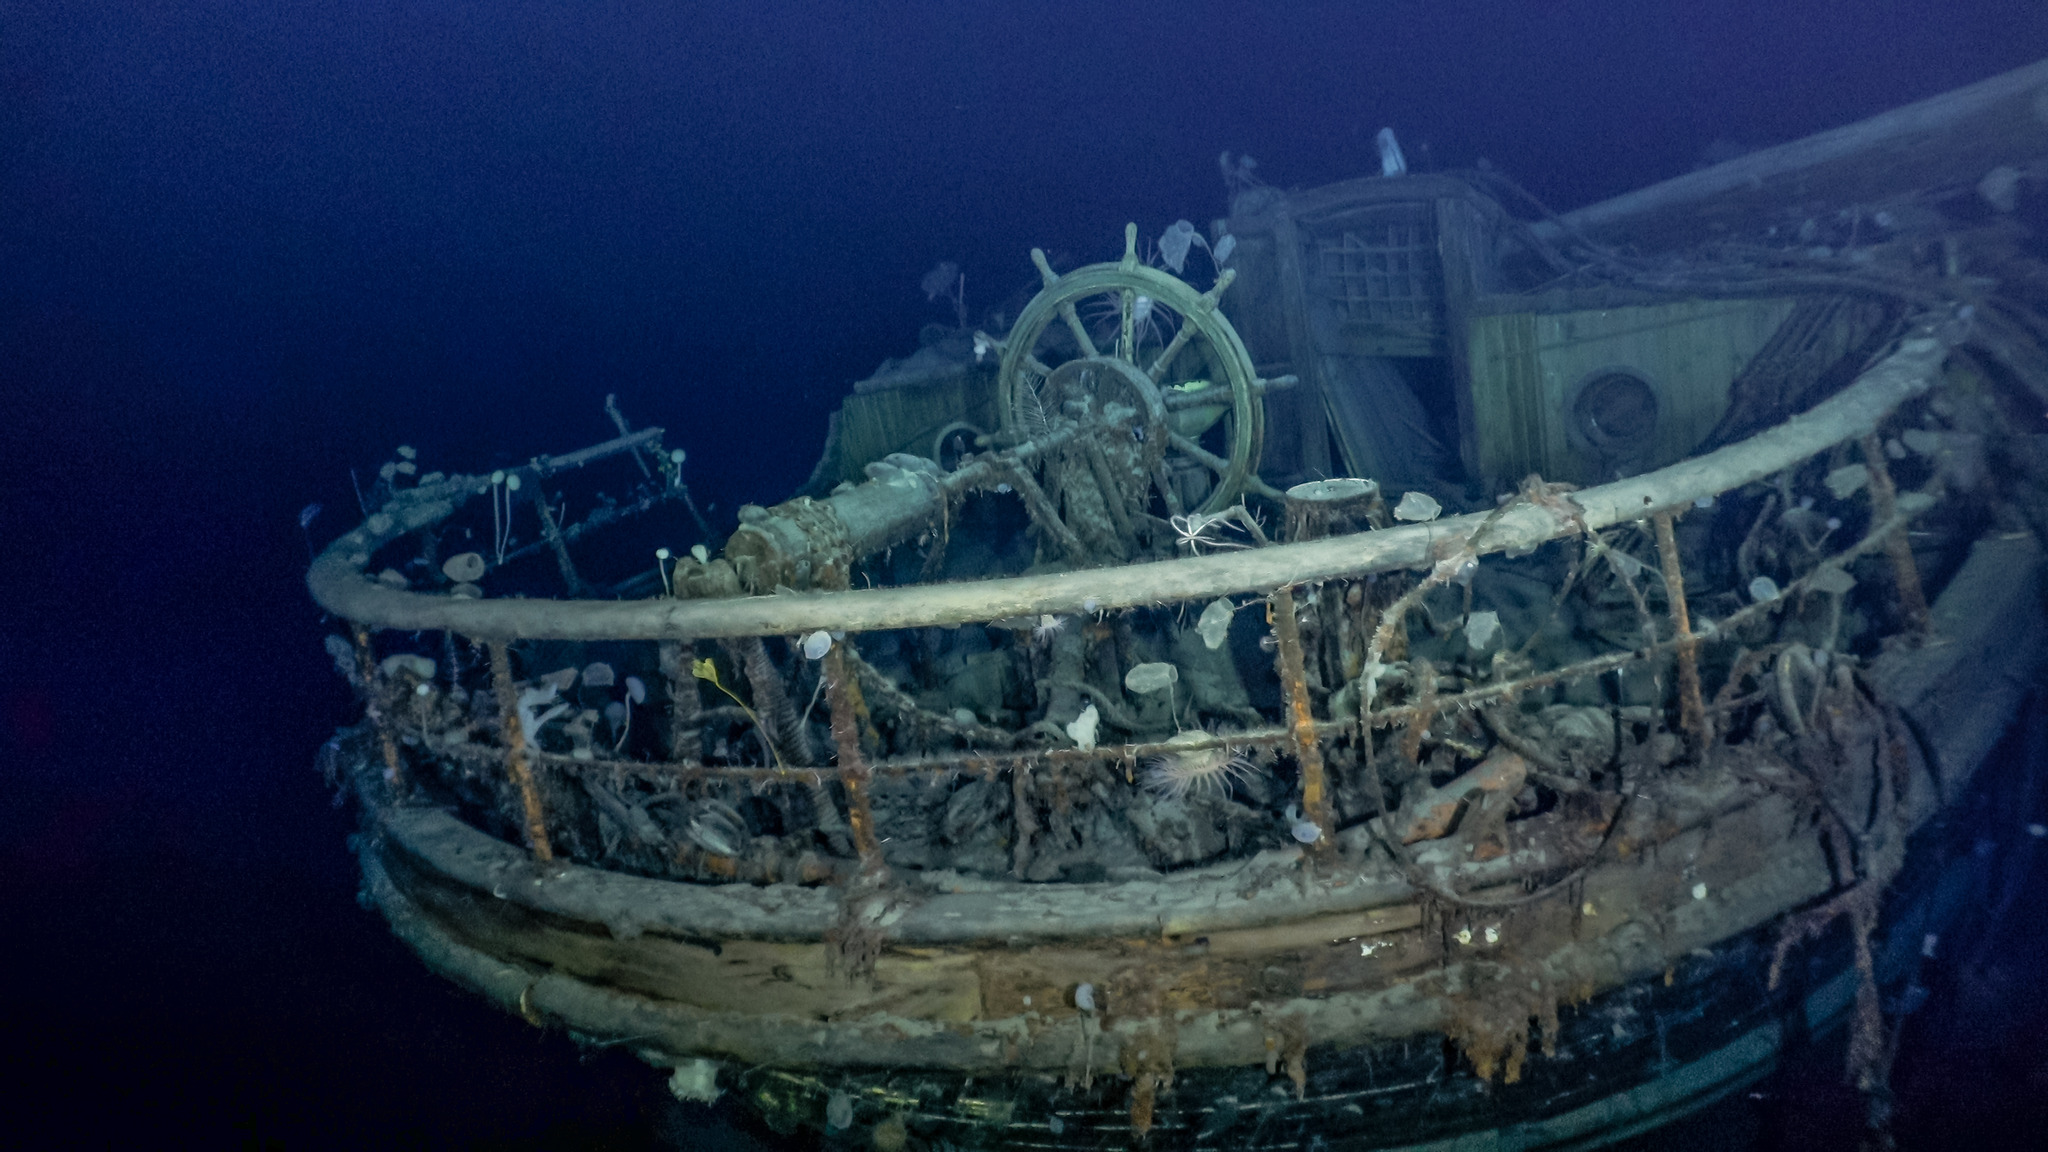 Hallan el Endurance, el barco perdido de Shackleton